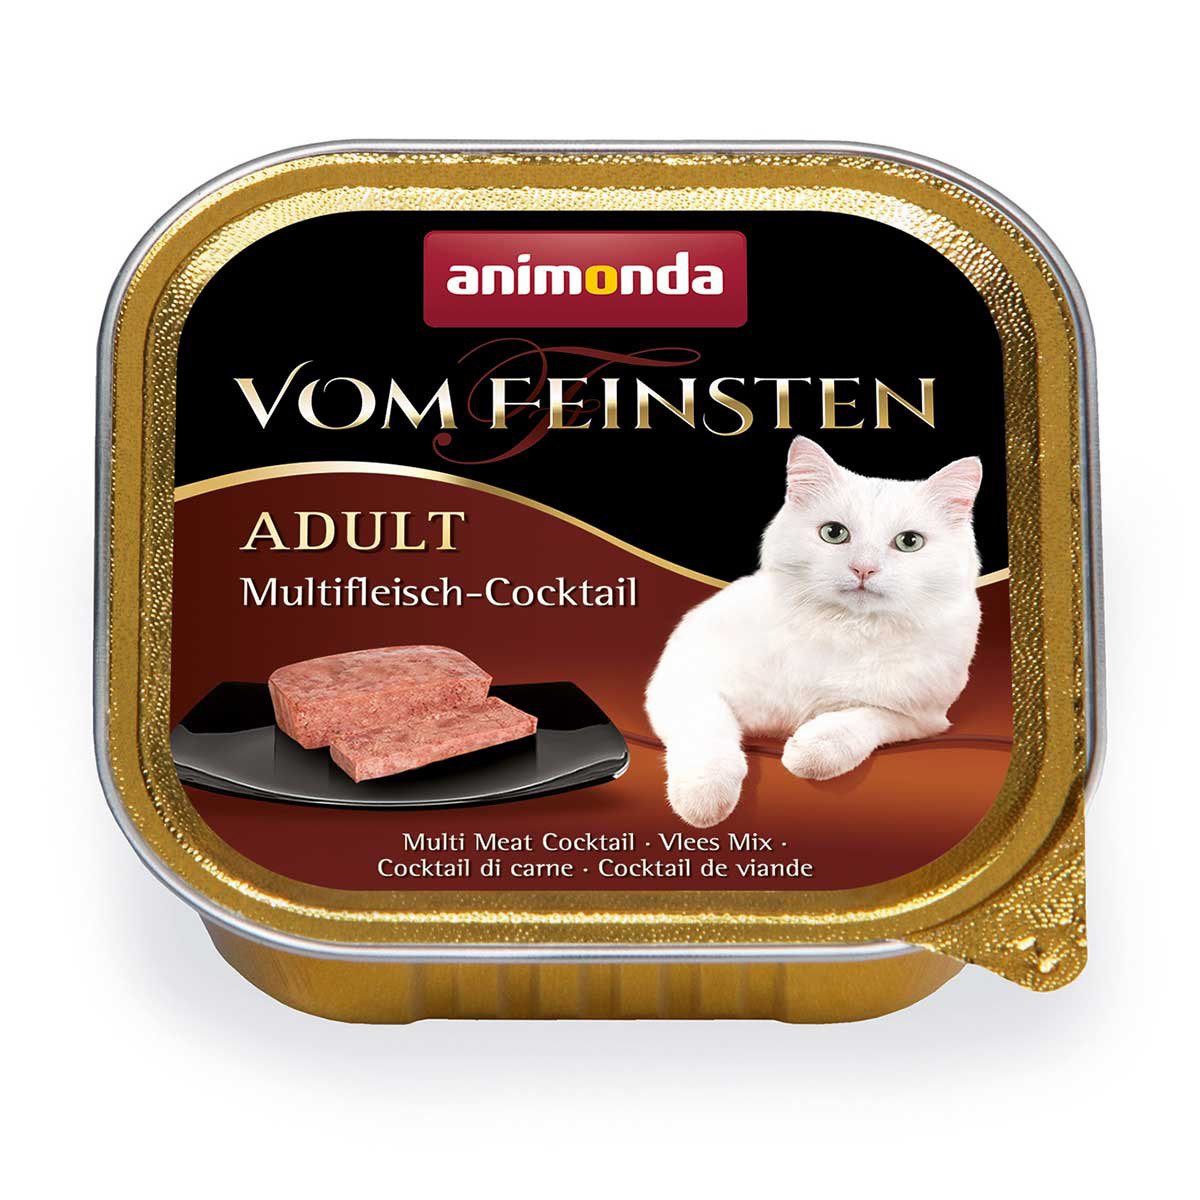 Katzenfutter, Animonda vom Feinsten Adult, Multi-Fleisch-Cocktail, 100g